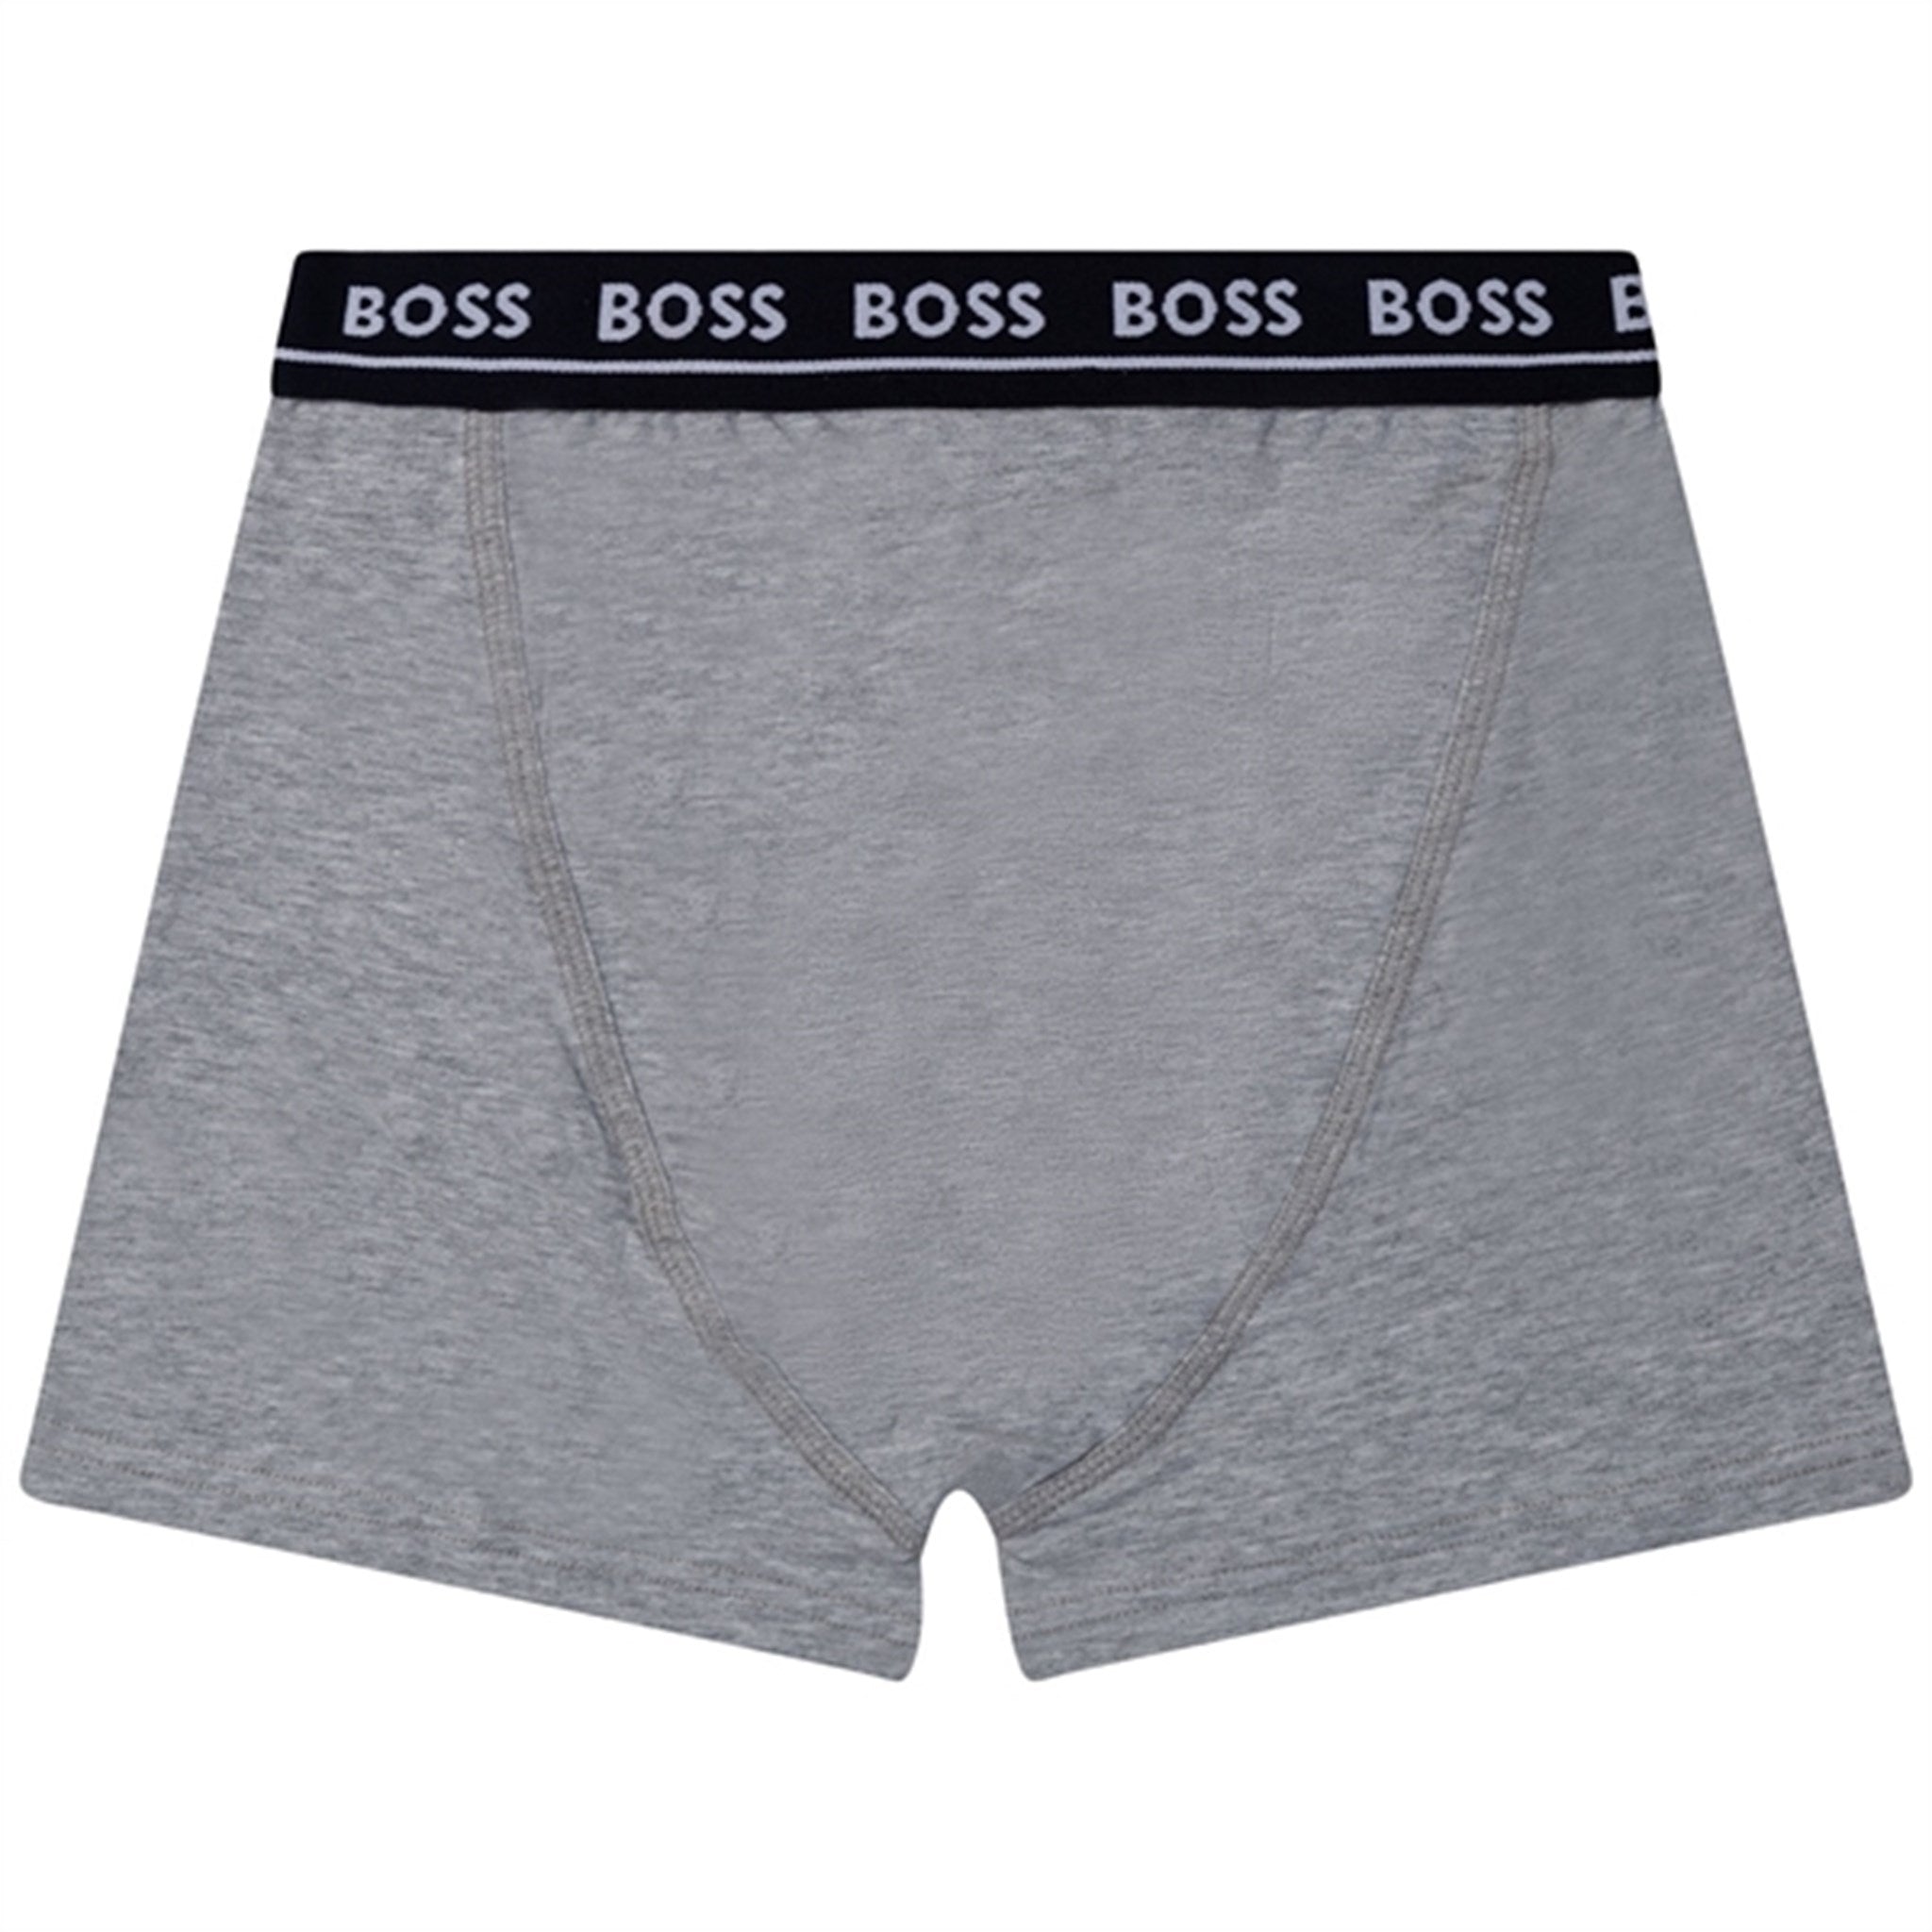 Hugo Boss Boxer Shorts 2-pack Black 7